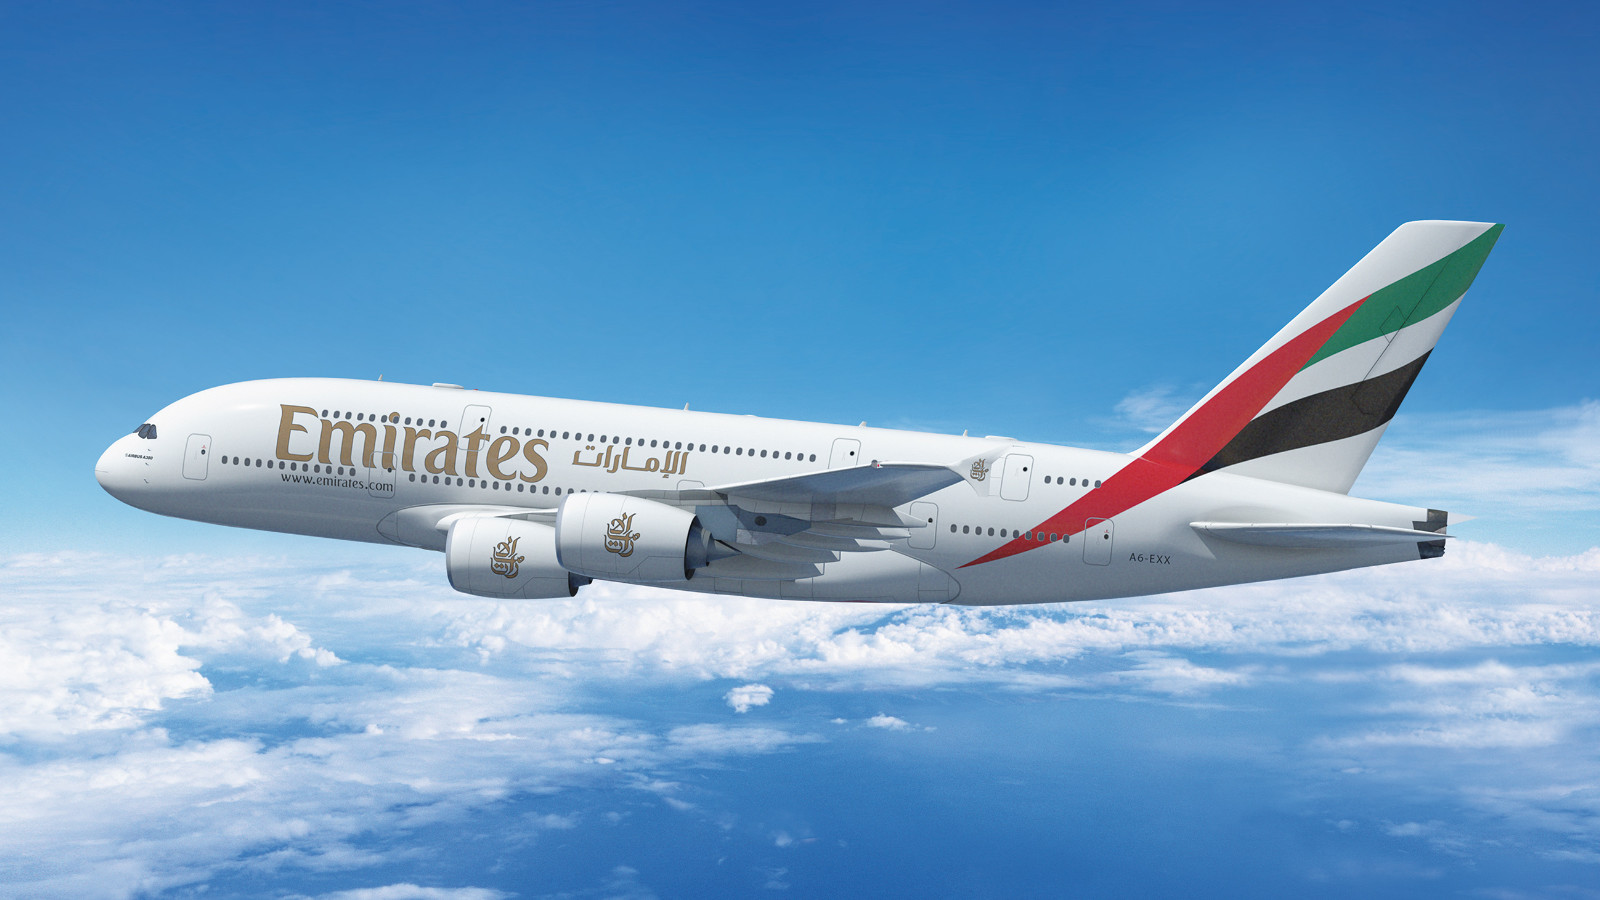 Emirates A380 sky